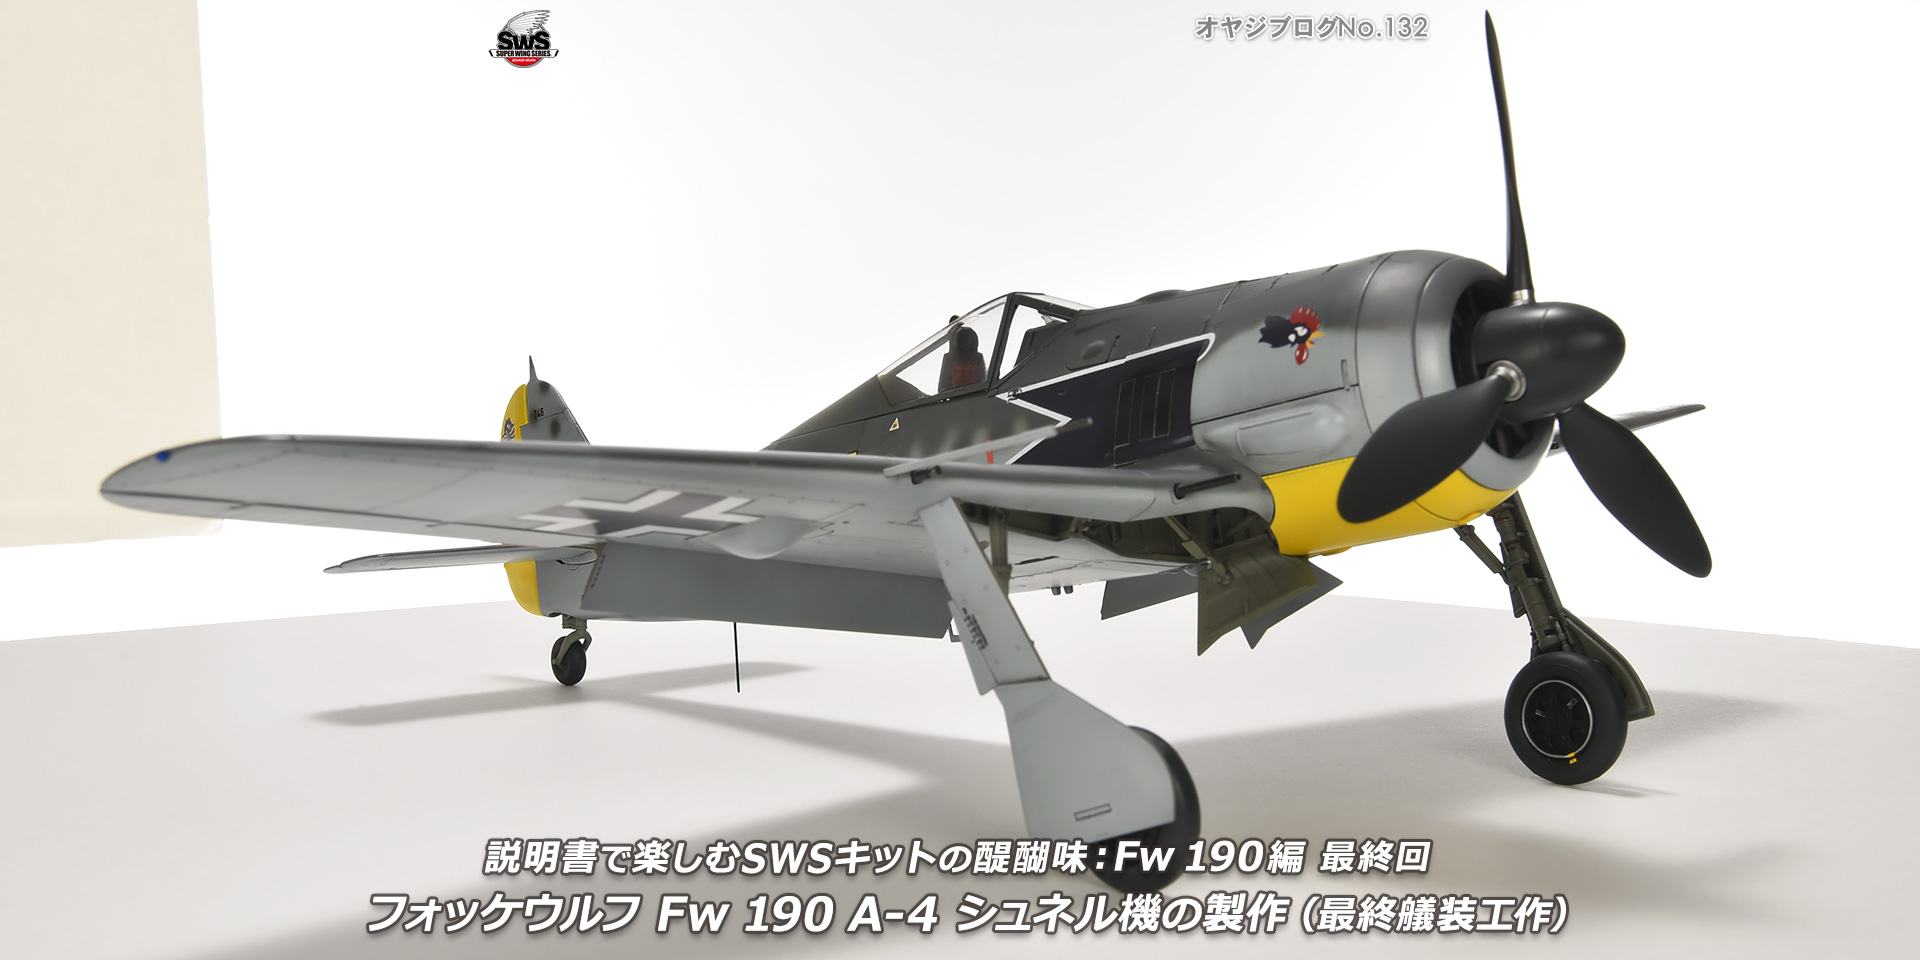 オヤジブログNo.132 - 説明書で楽しむSWSキットの醍醐味： Fw 190編 最終回　フォッケウルフ Fw 190 A-4 シュネル機の製作（最終艤装工作）